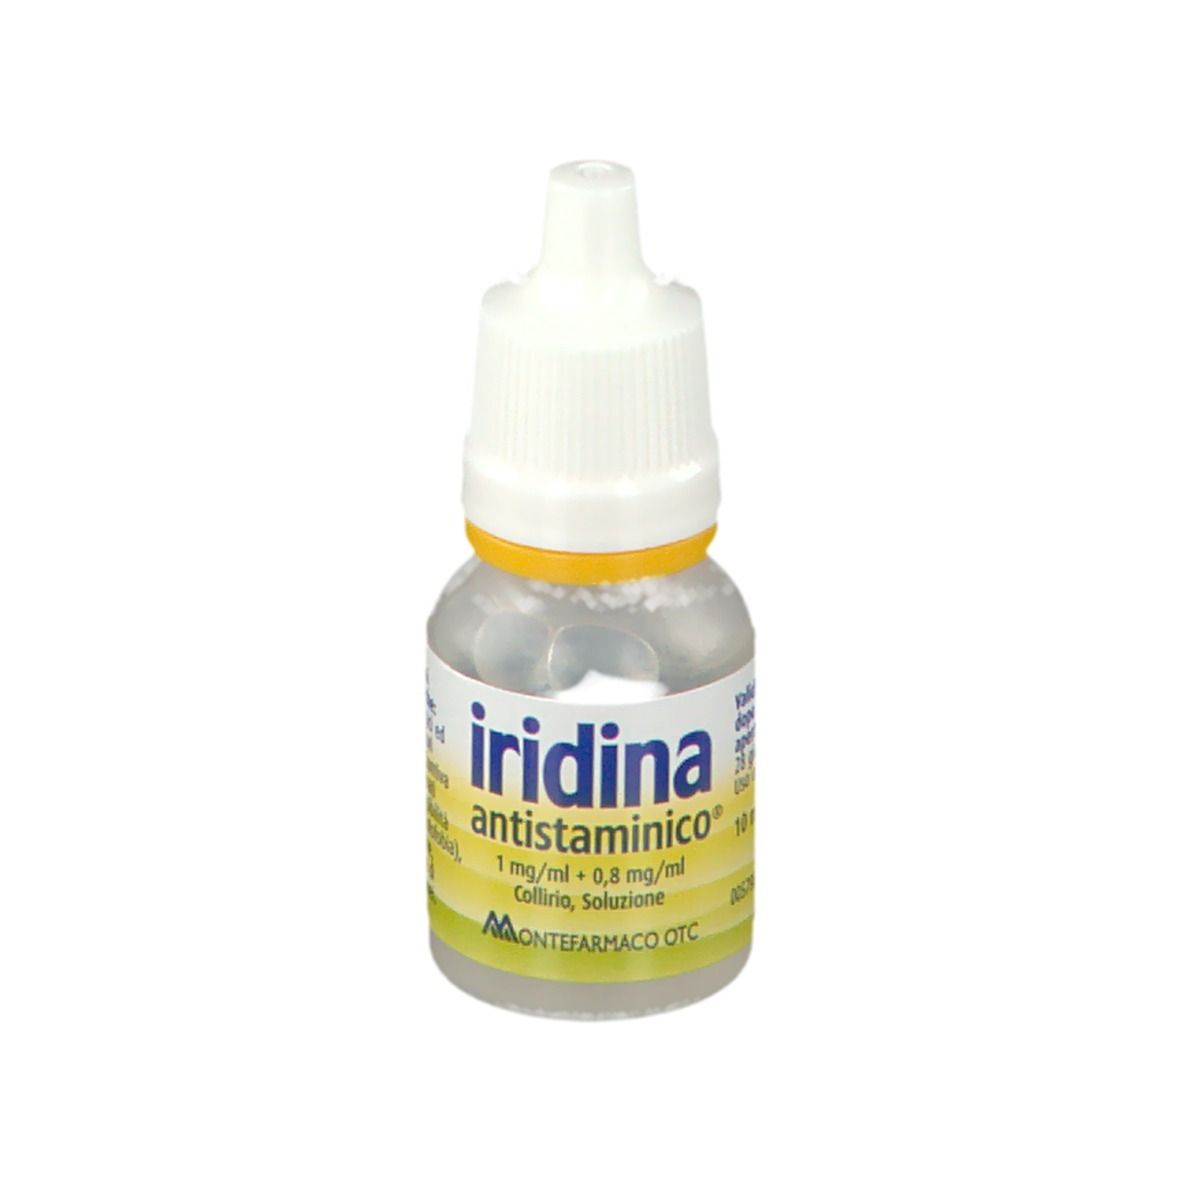 Iridina antistamico® 1mg/ml + 0,8 mg/ml Collirio, Soluzione